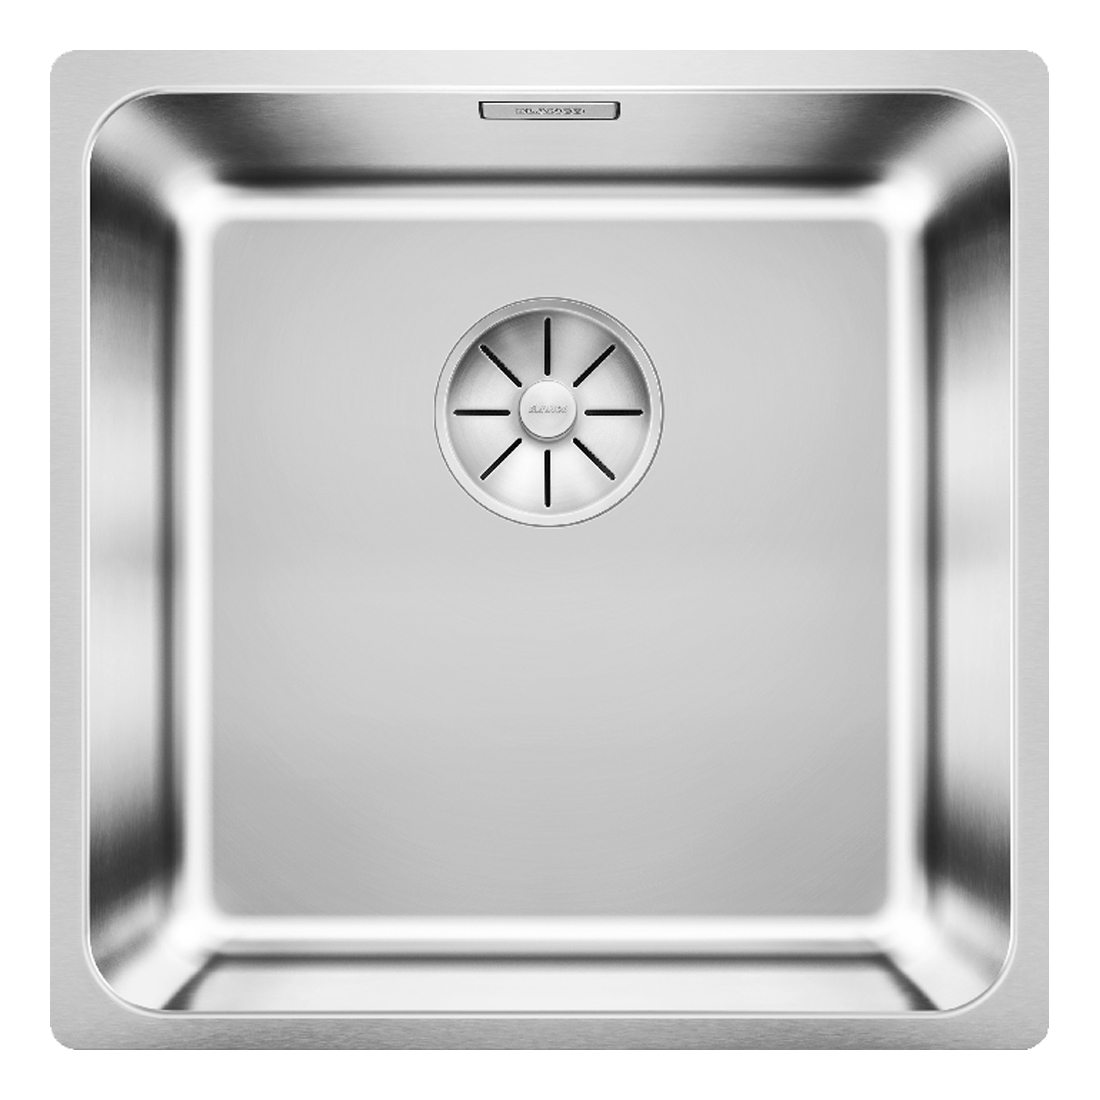 Кухонная мойка Blanco Solis 400-IF полированная сталь кухонная мойка franke 101 0689 948 нержавеющая сталь